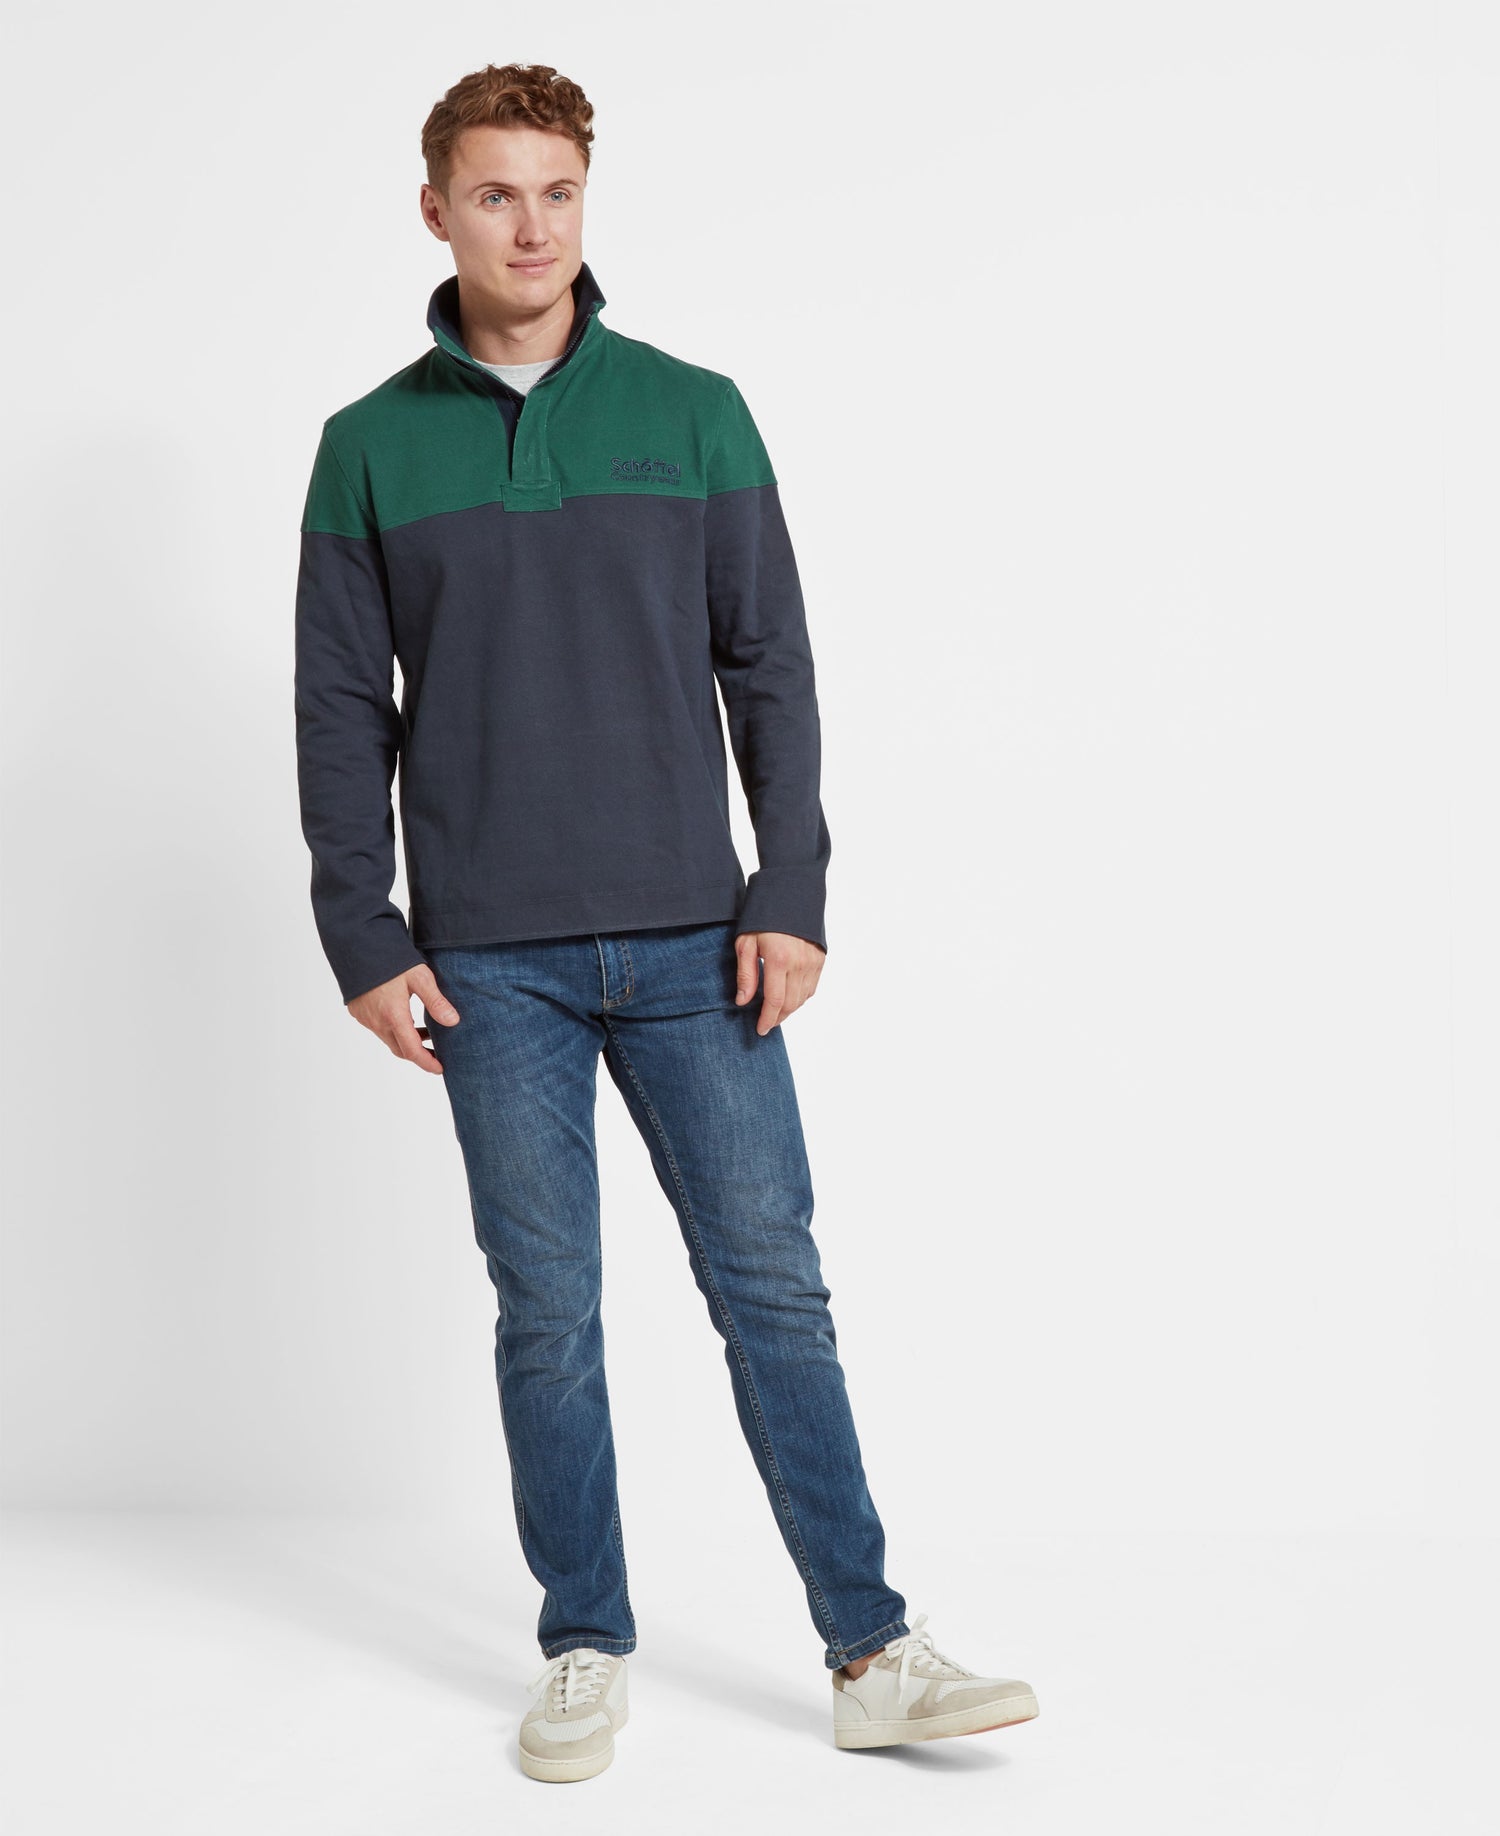 Helford Heritage Sweatshirt - Navy/Pine Green